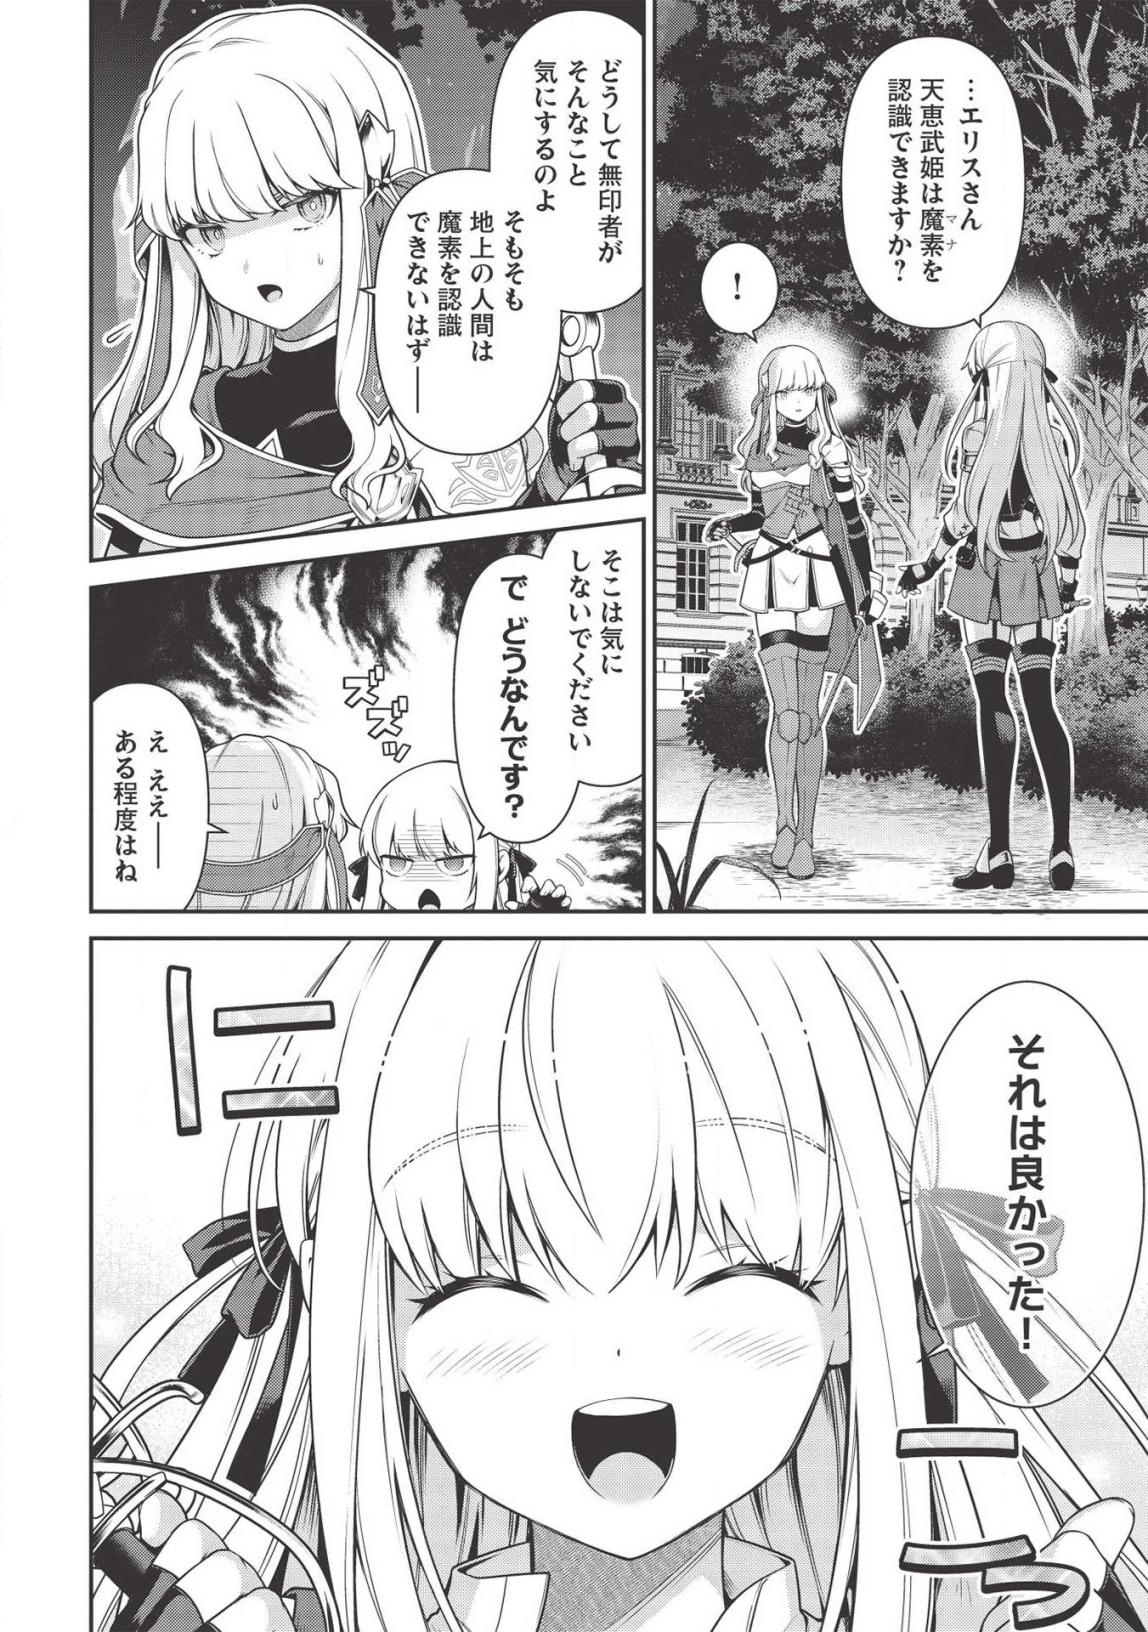 Eiyu-Oh, Bu Wo Kiwameru tame Tensei Su, Soshite, Sekai Saikyou no Minarai Kishi - Chapter 7.5 - Page 16